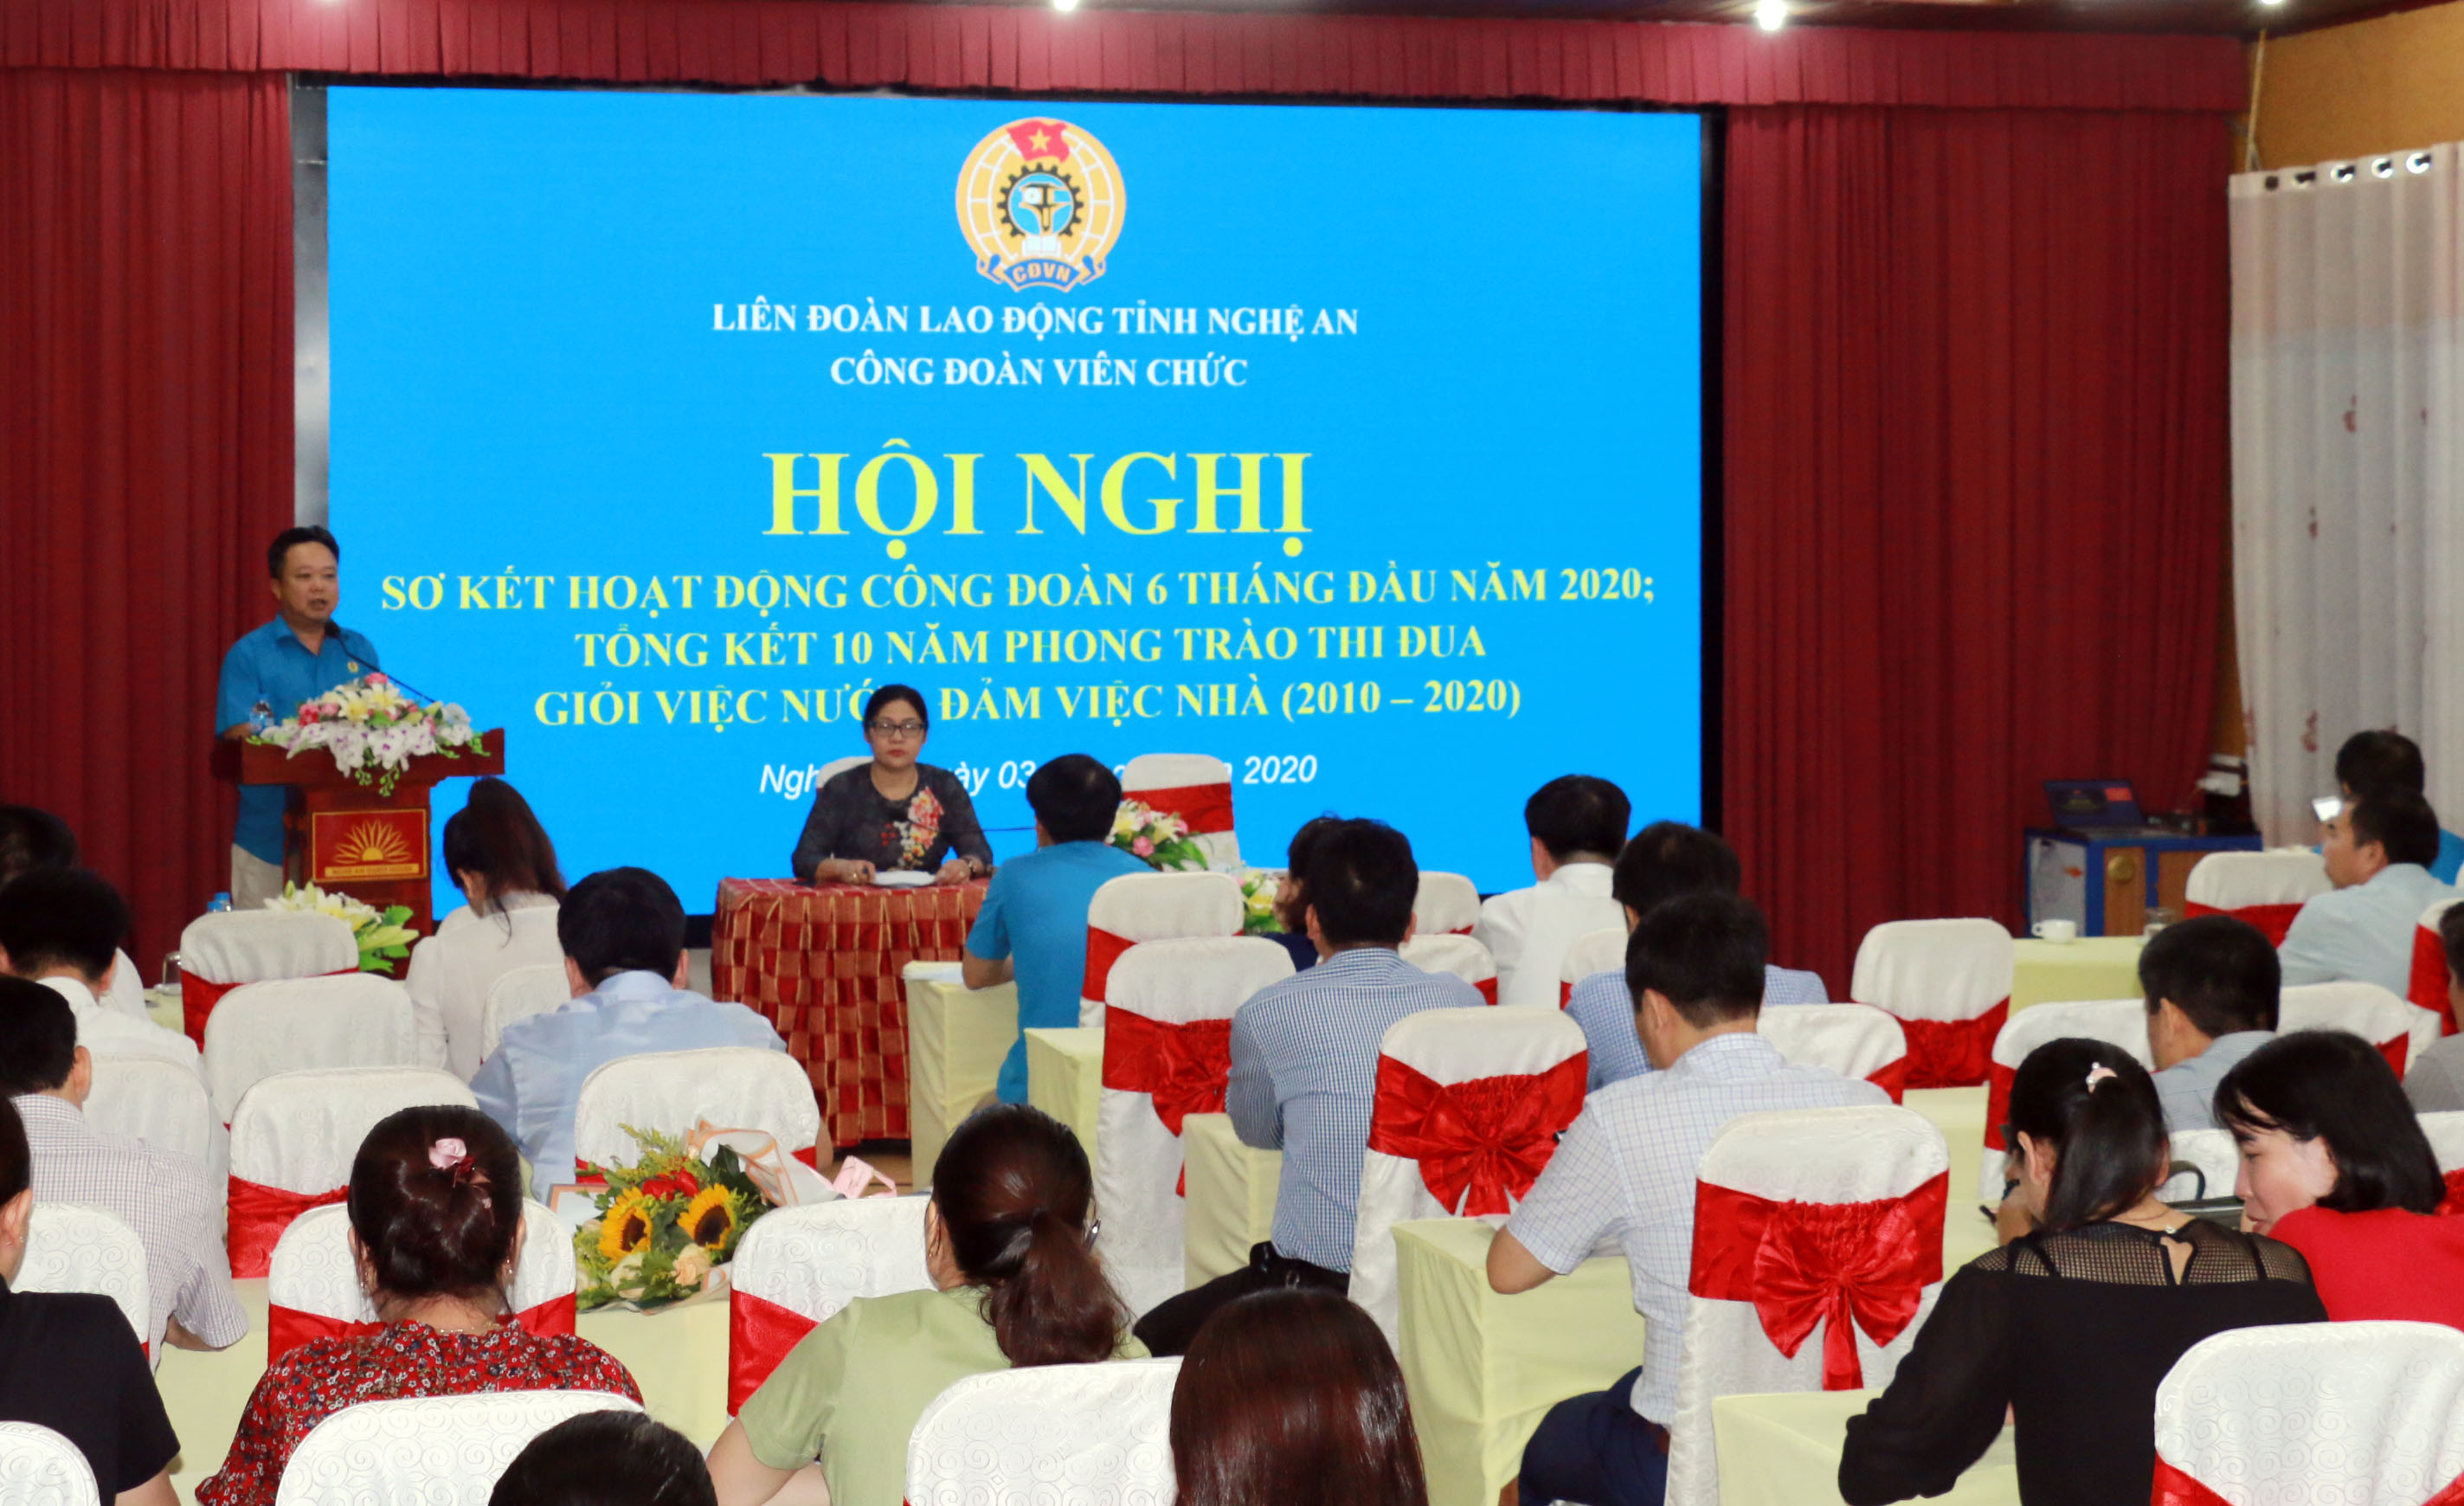 Đồng chí Nguyễn Công Doanh - Chủ tịch Công đoàn viên chức phát biểu tại Hội nghị. Ảnh: Mỹ Hà.